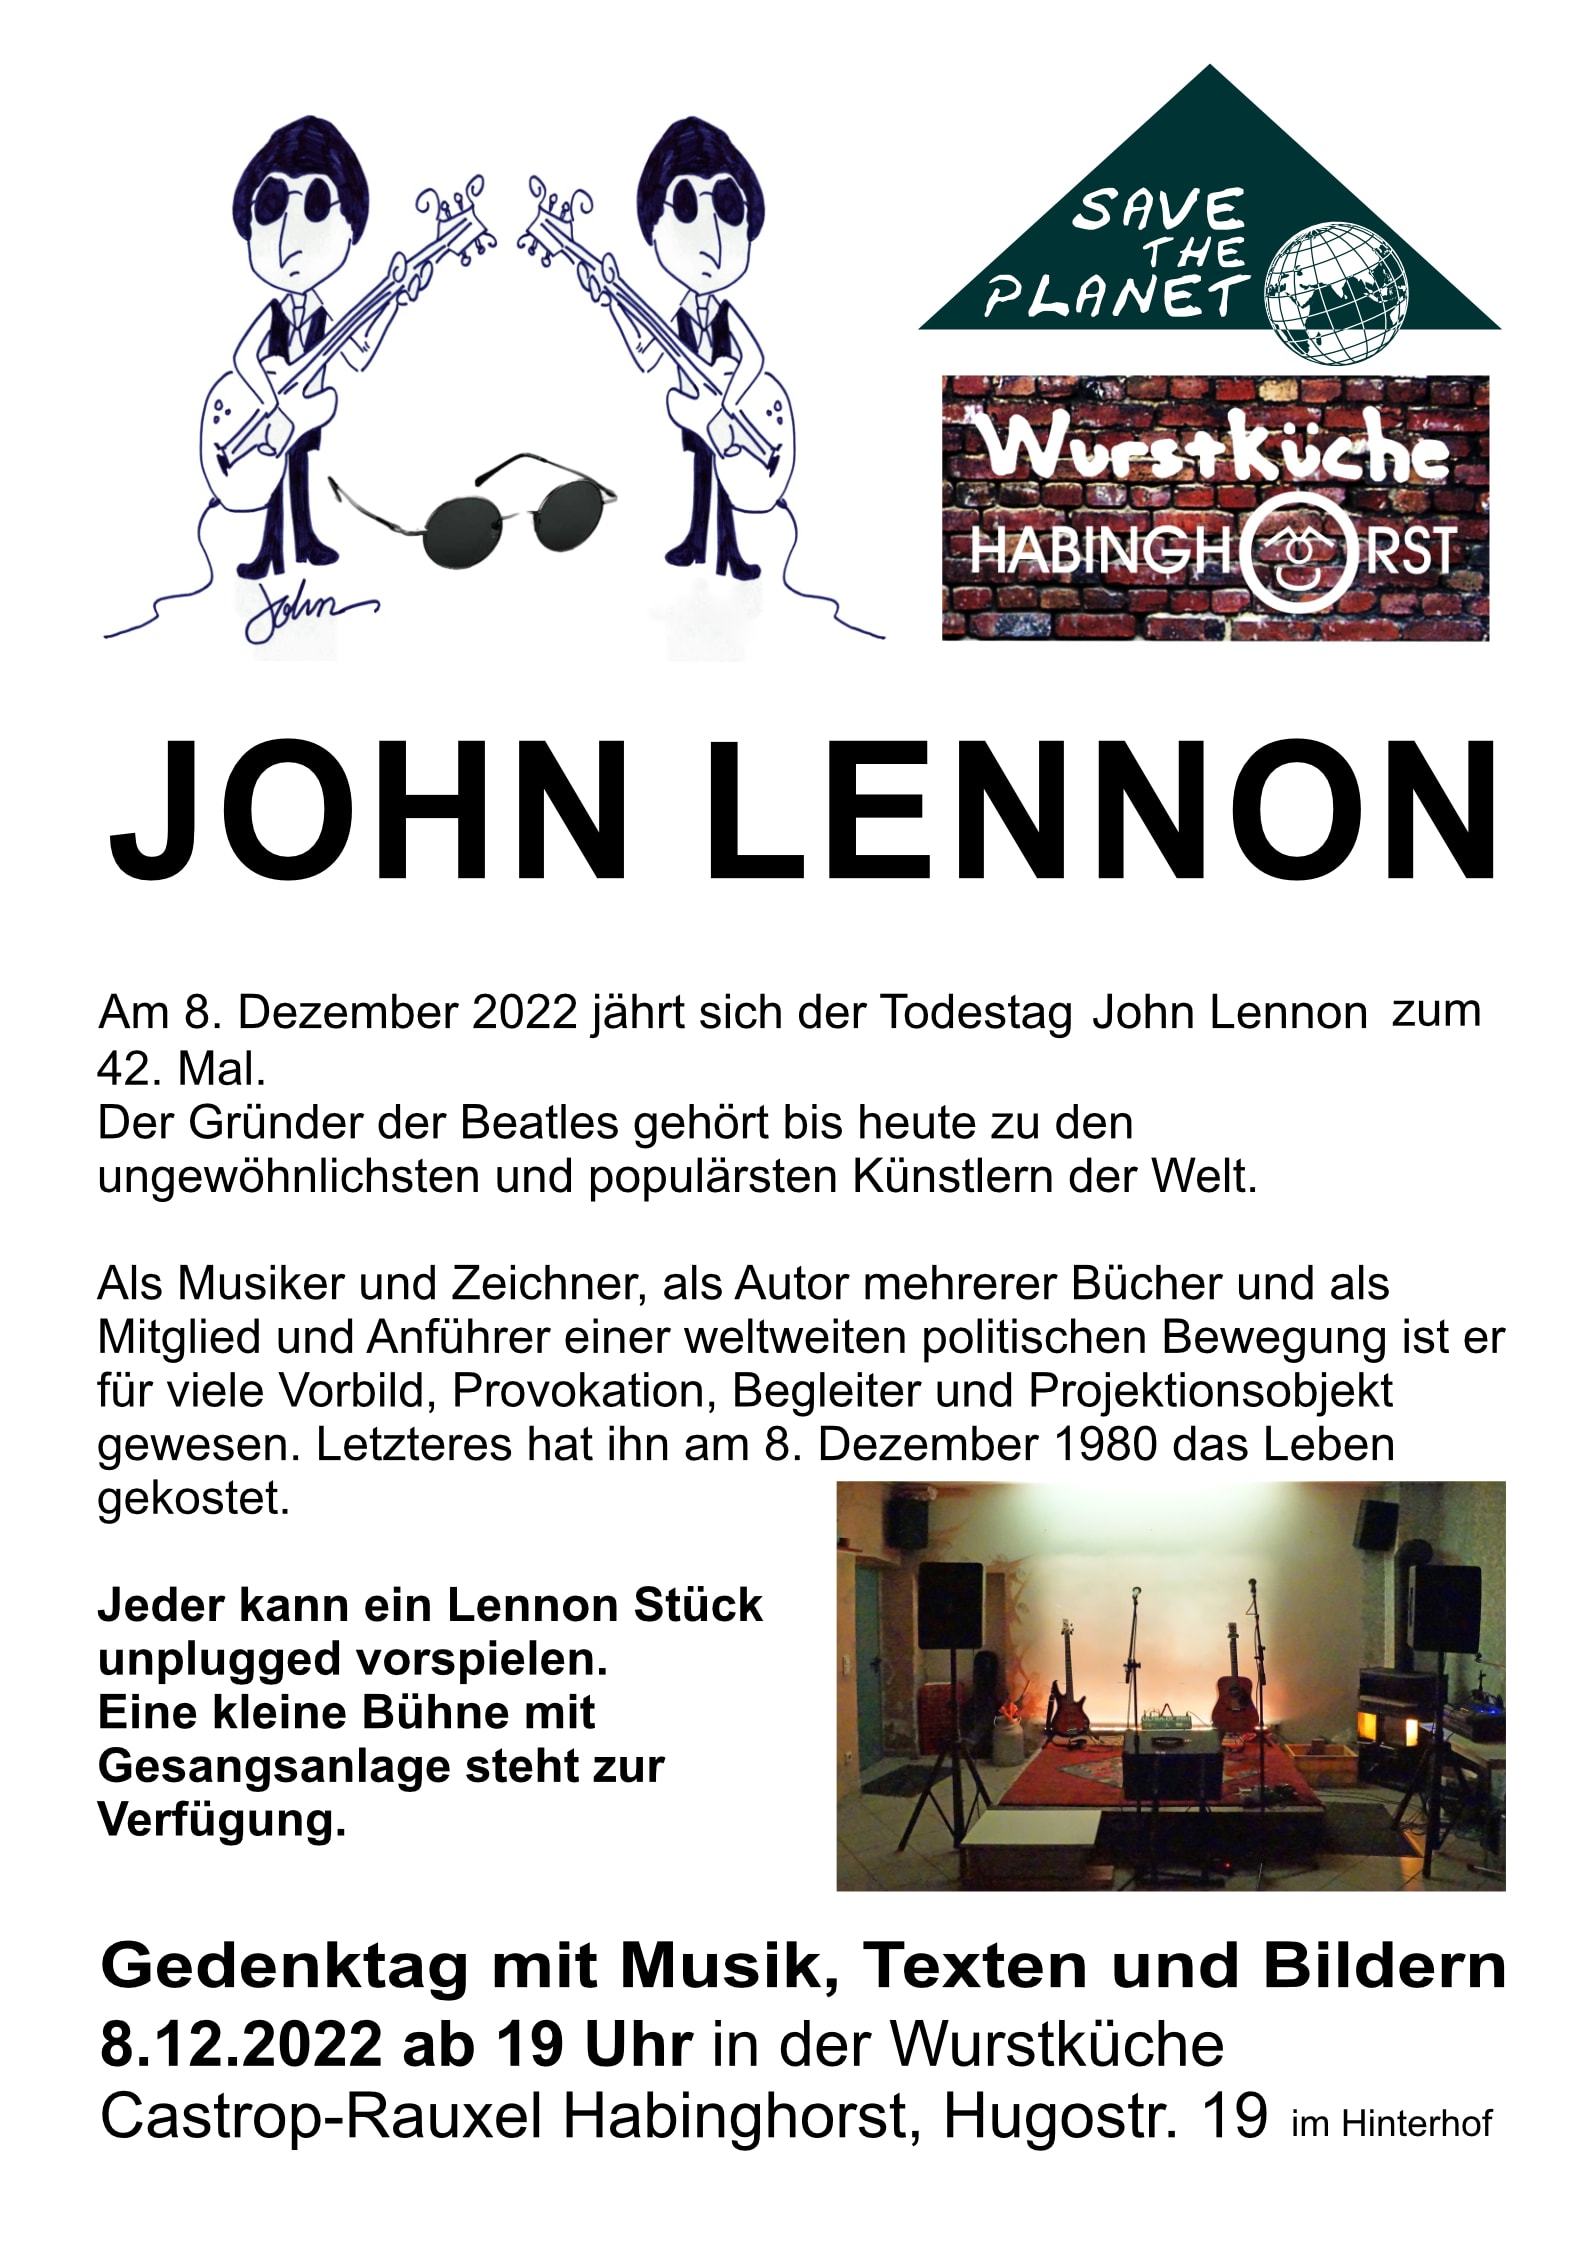 John Lennon Abend - event poster